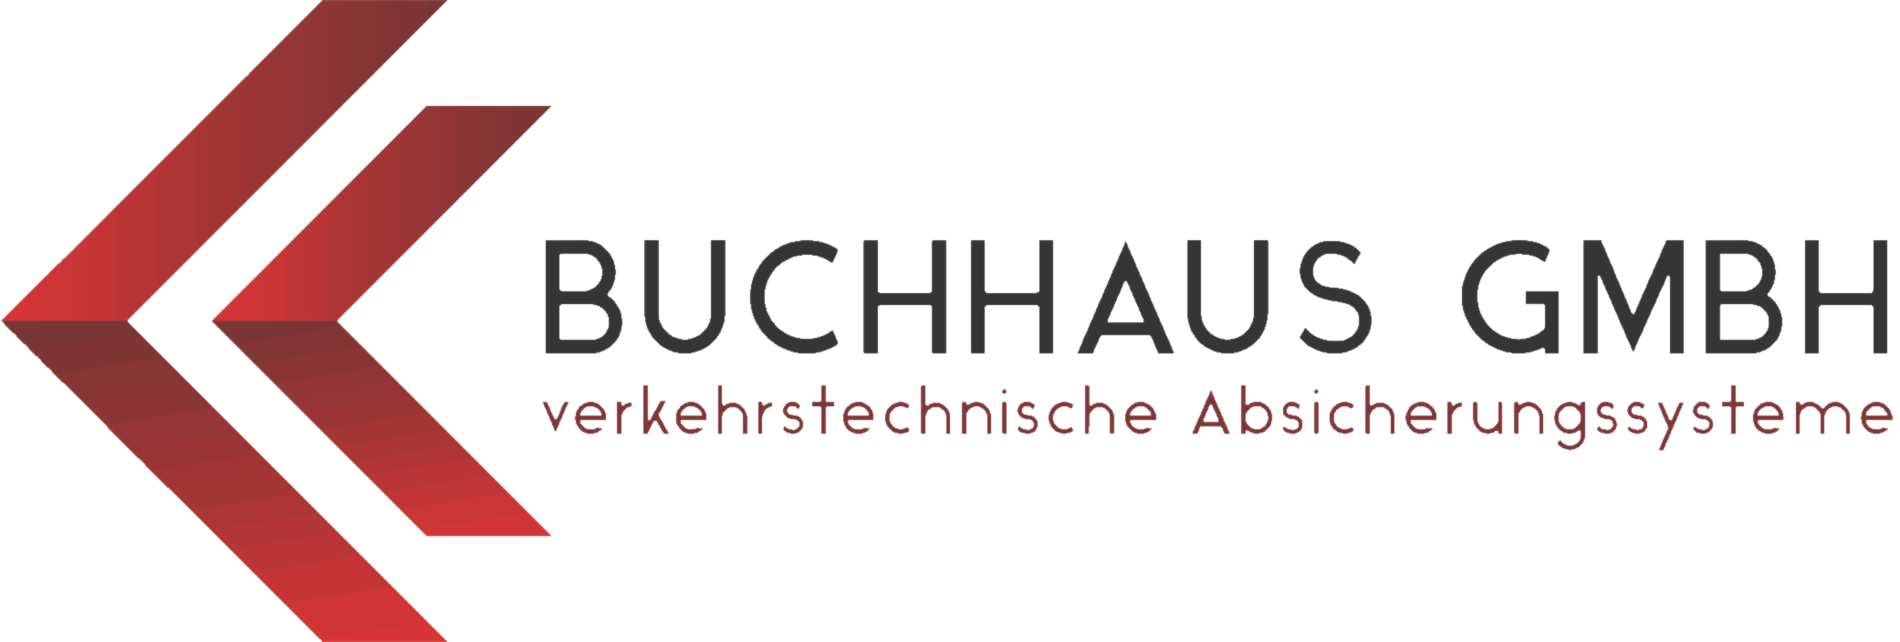 Buchhaus GmbH